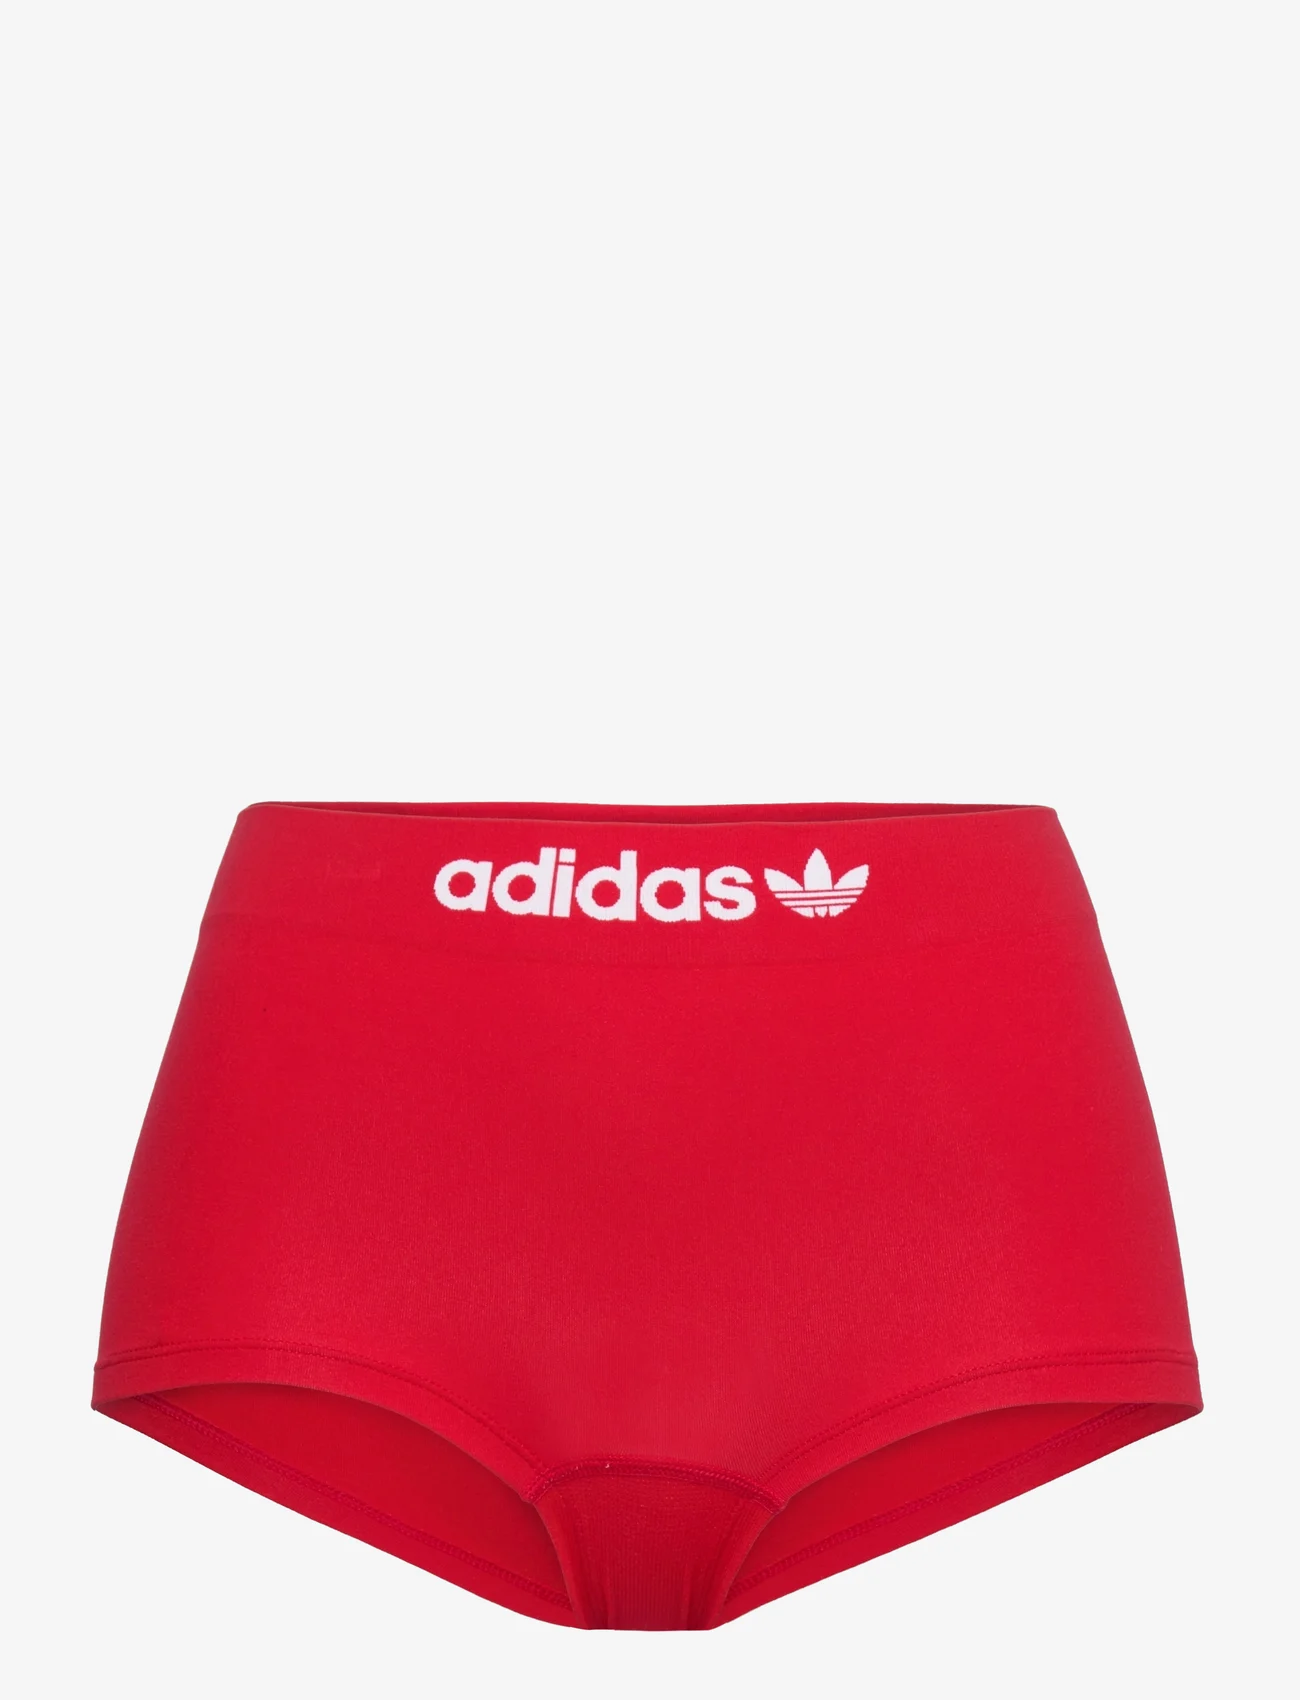 adidas Originals Underwear - Short - die niedrigsten preise - red - 0